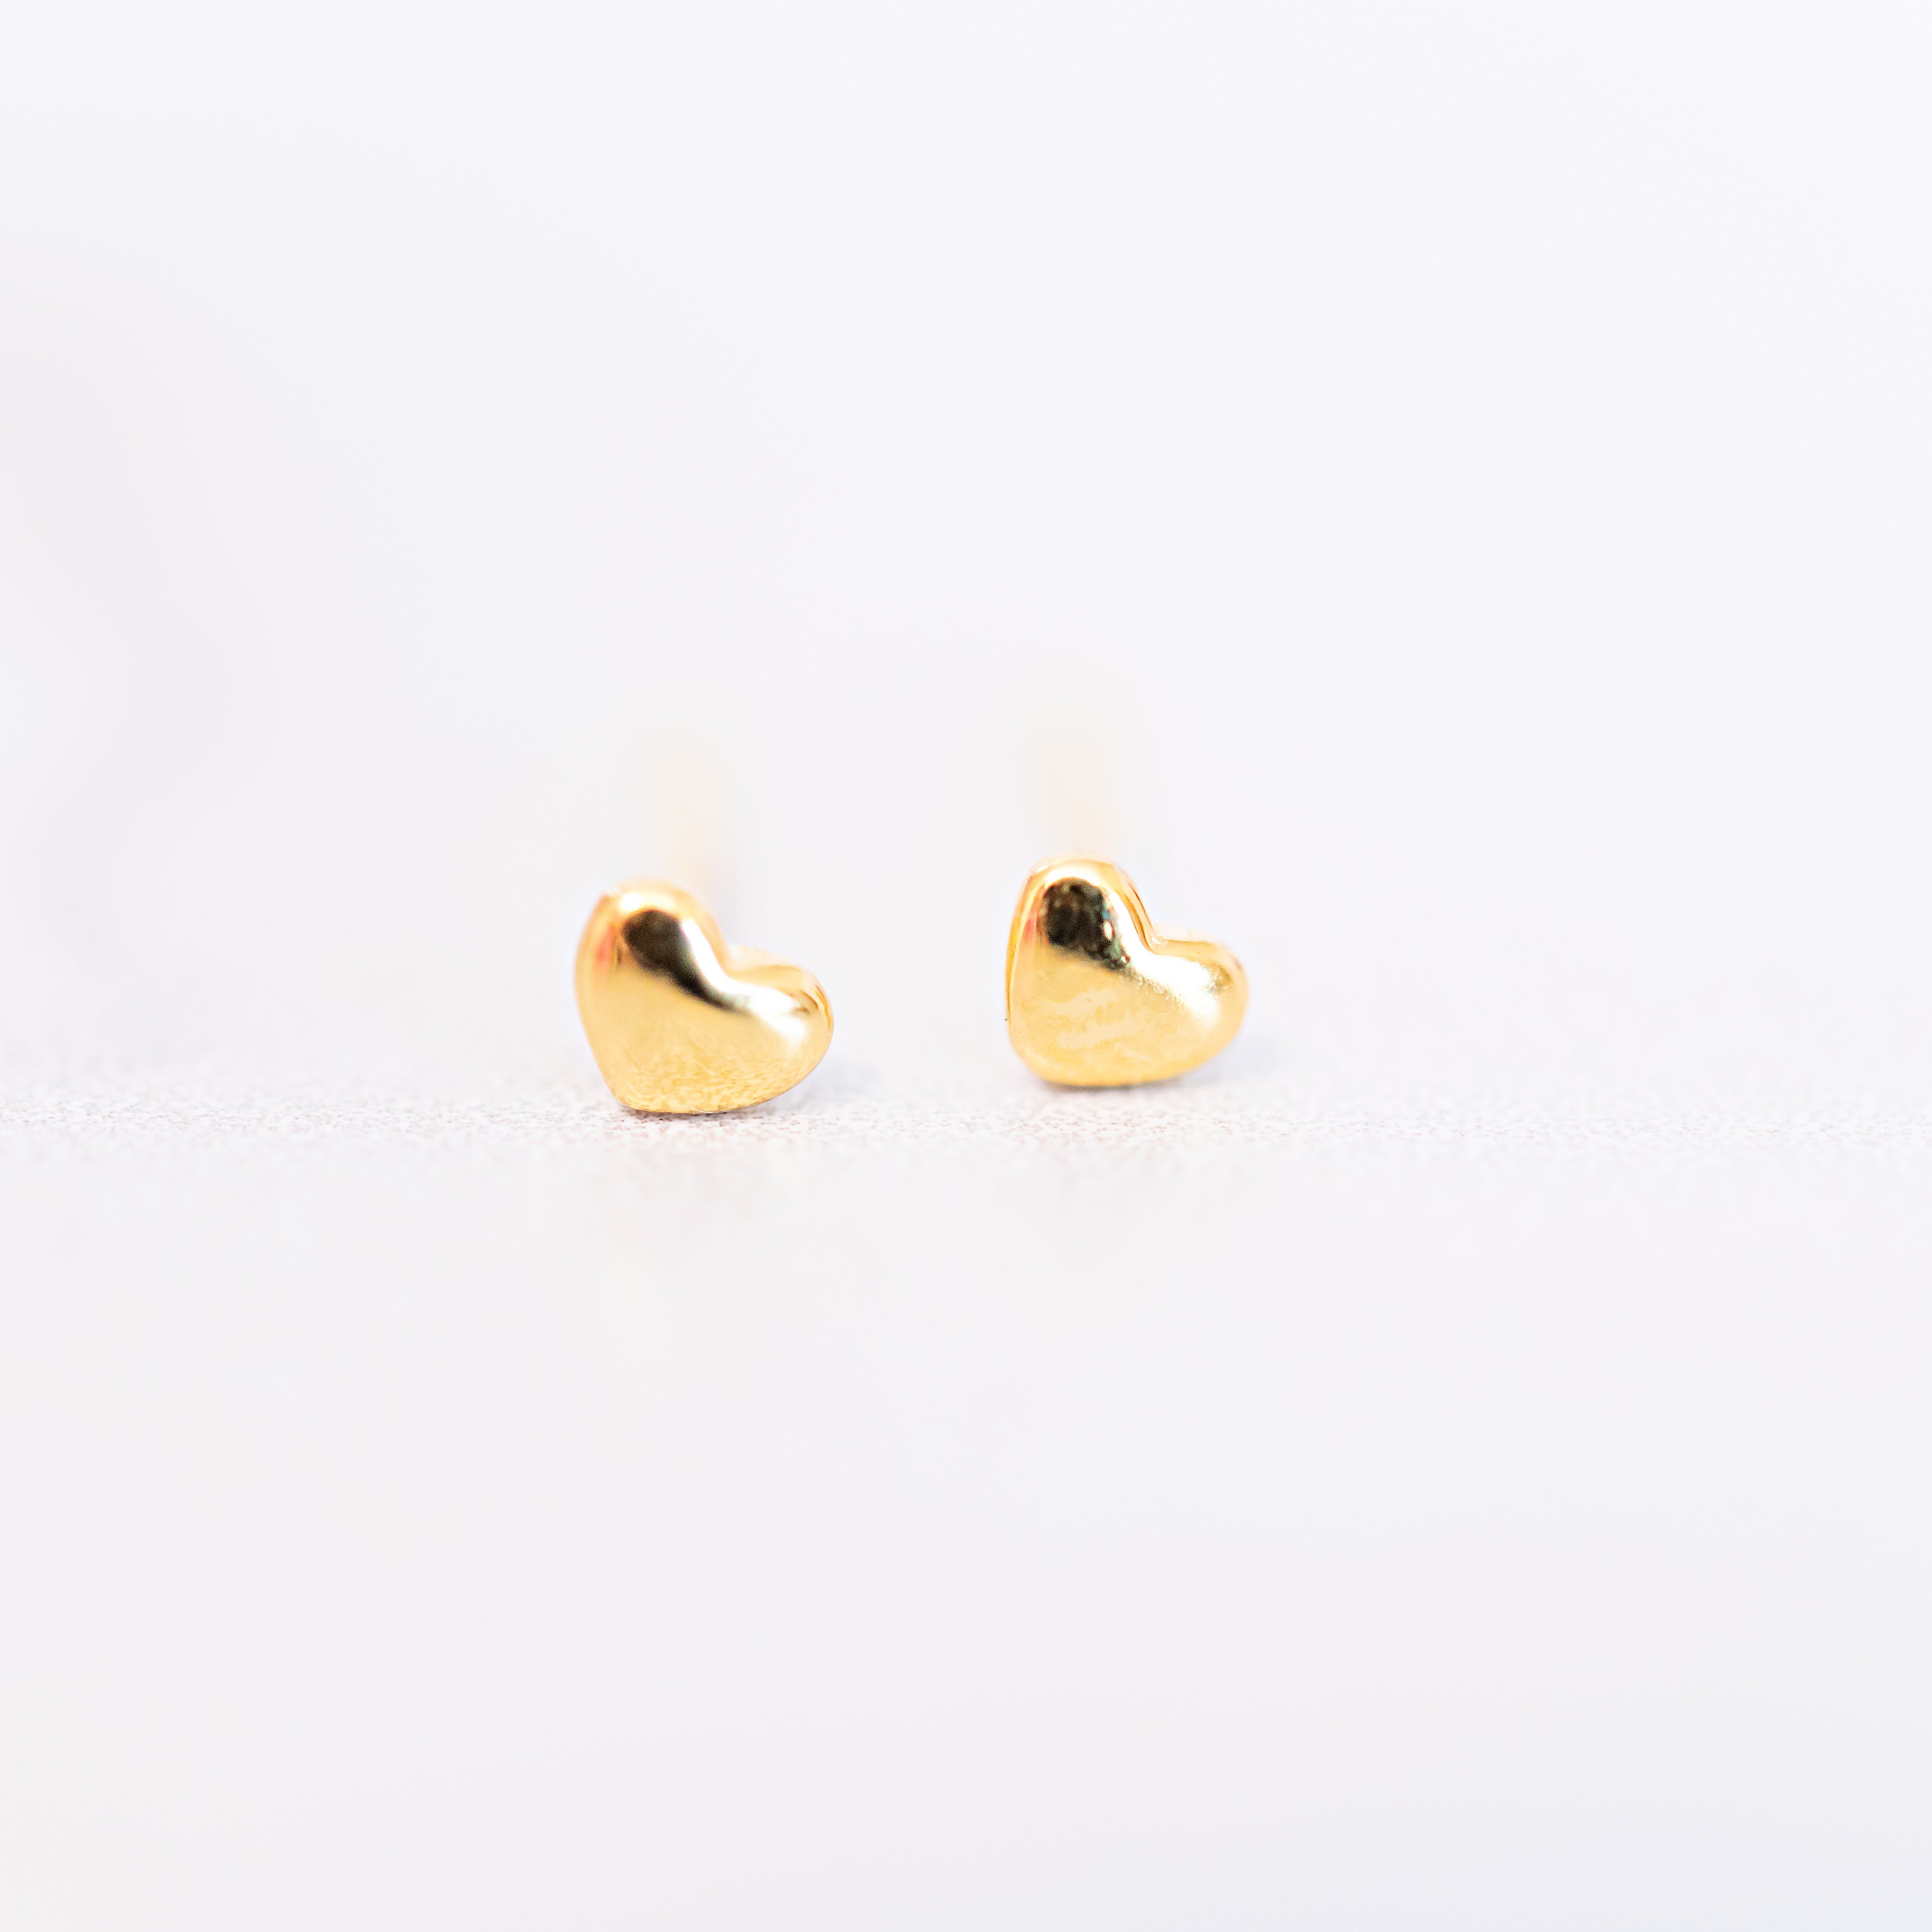 Tops Drop Earrings Gold Ear Rings at Rs 40000/pair in Jaipur | ID:  23093194912